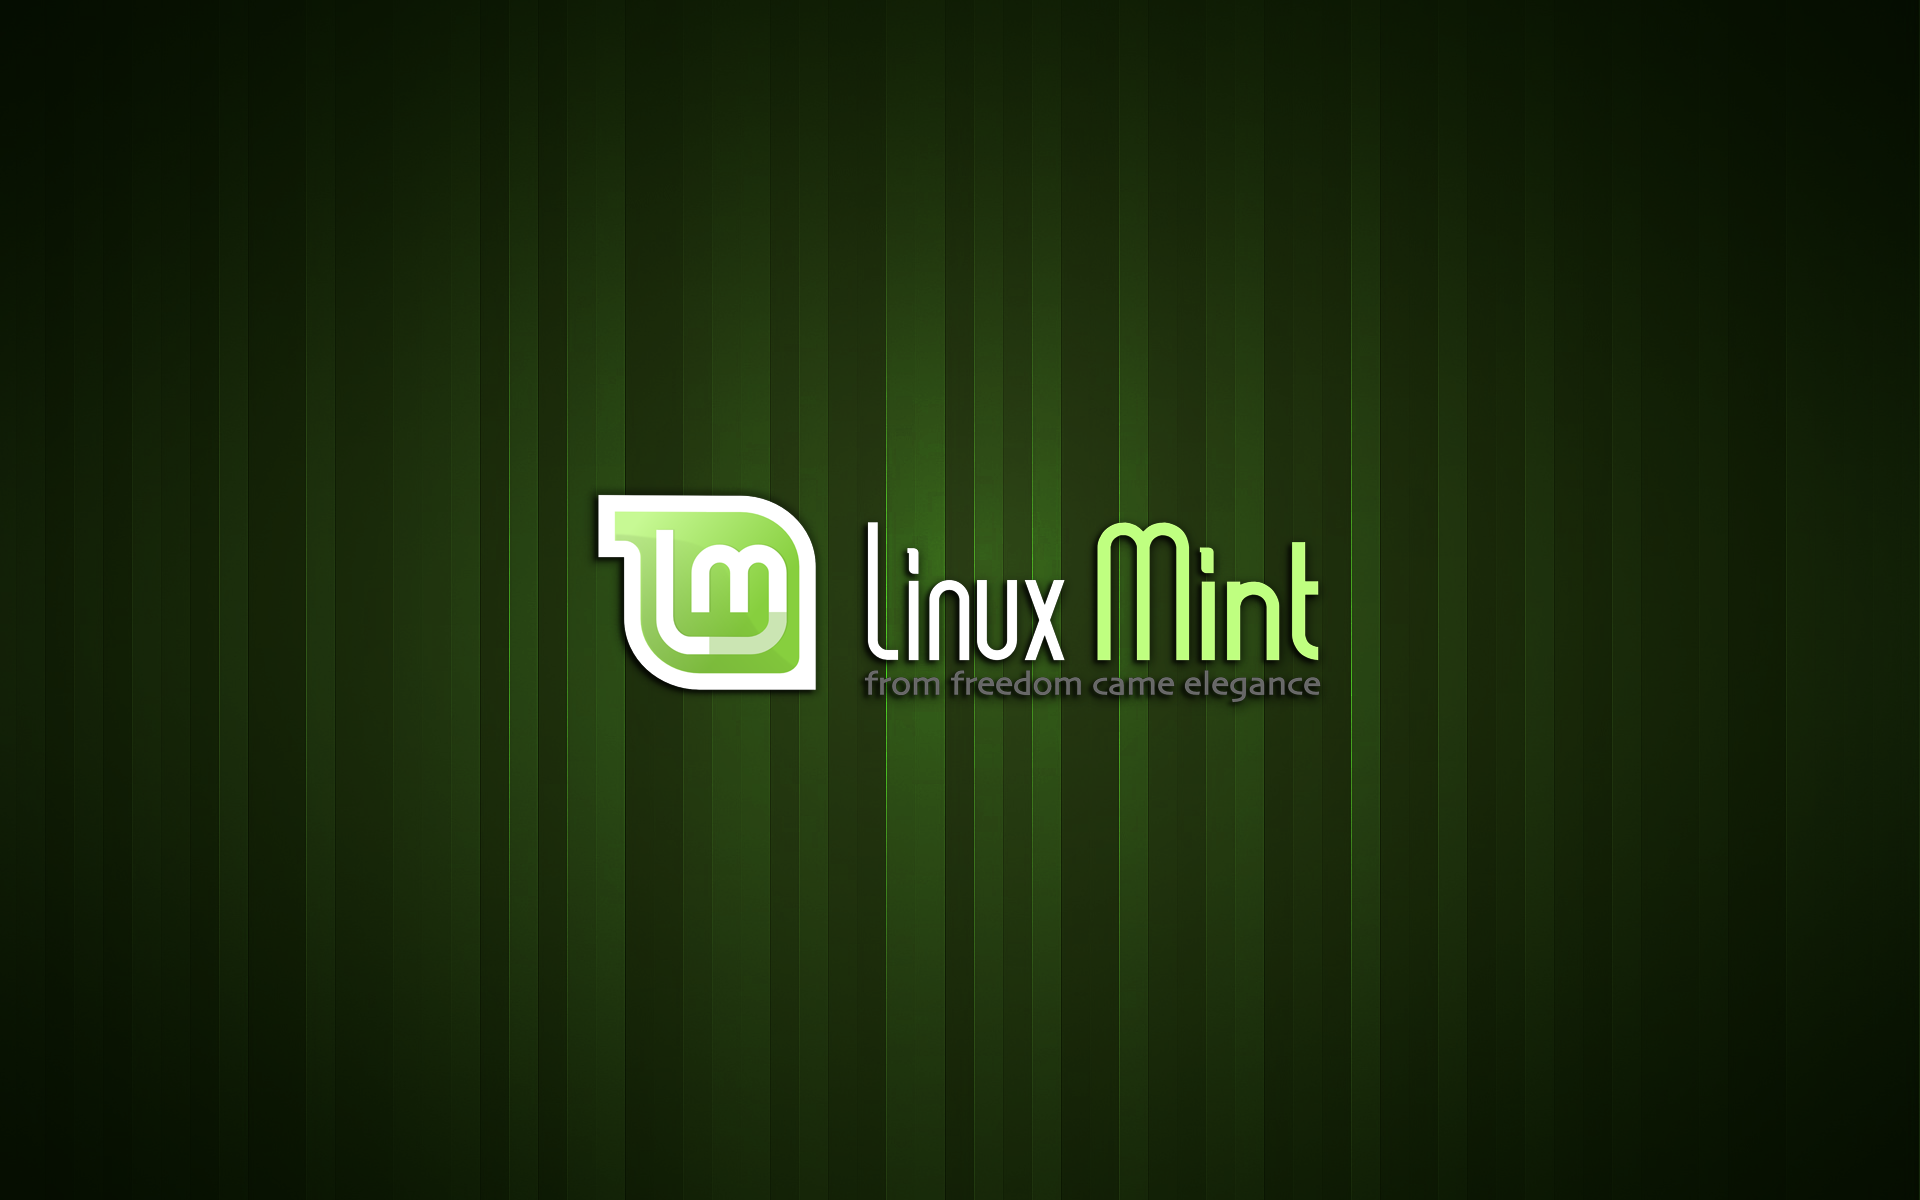 Linux Mint Wallpaper Pack Flgx Db